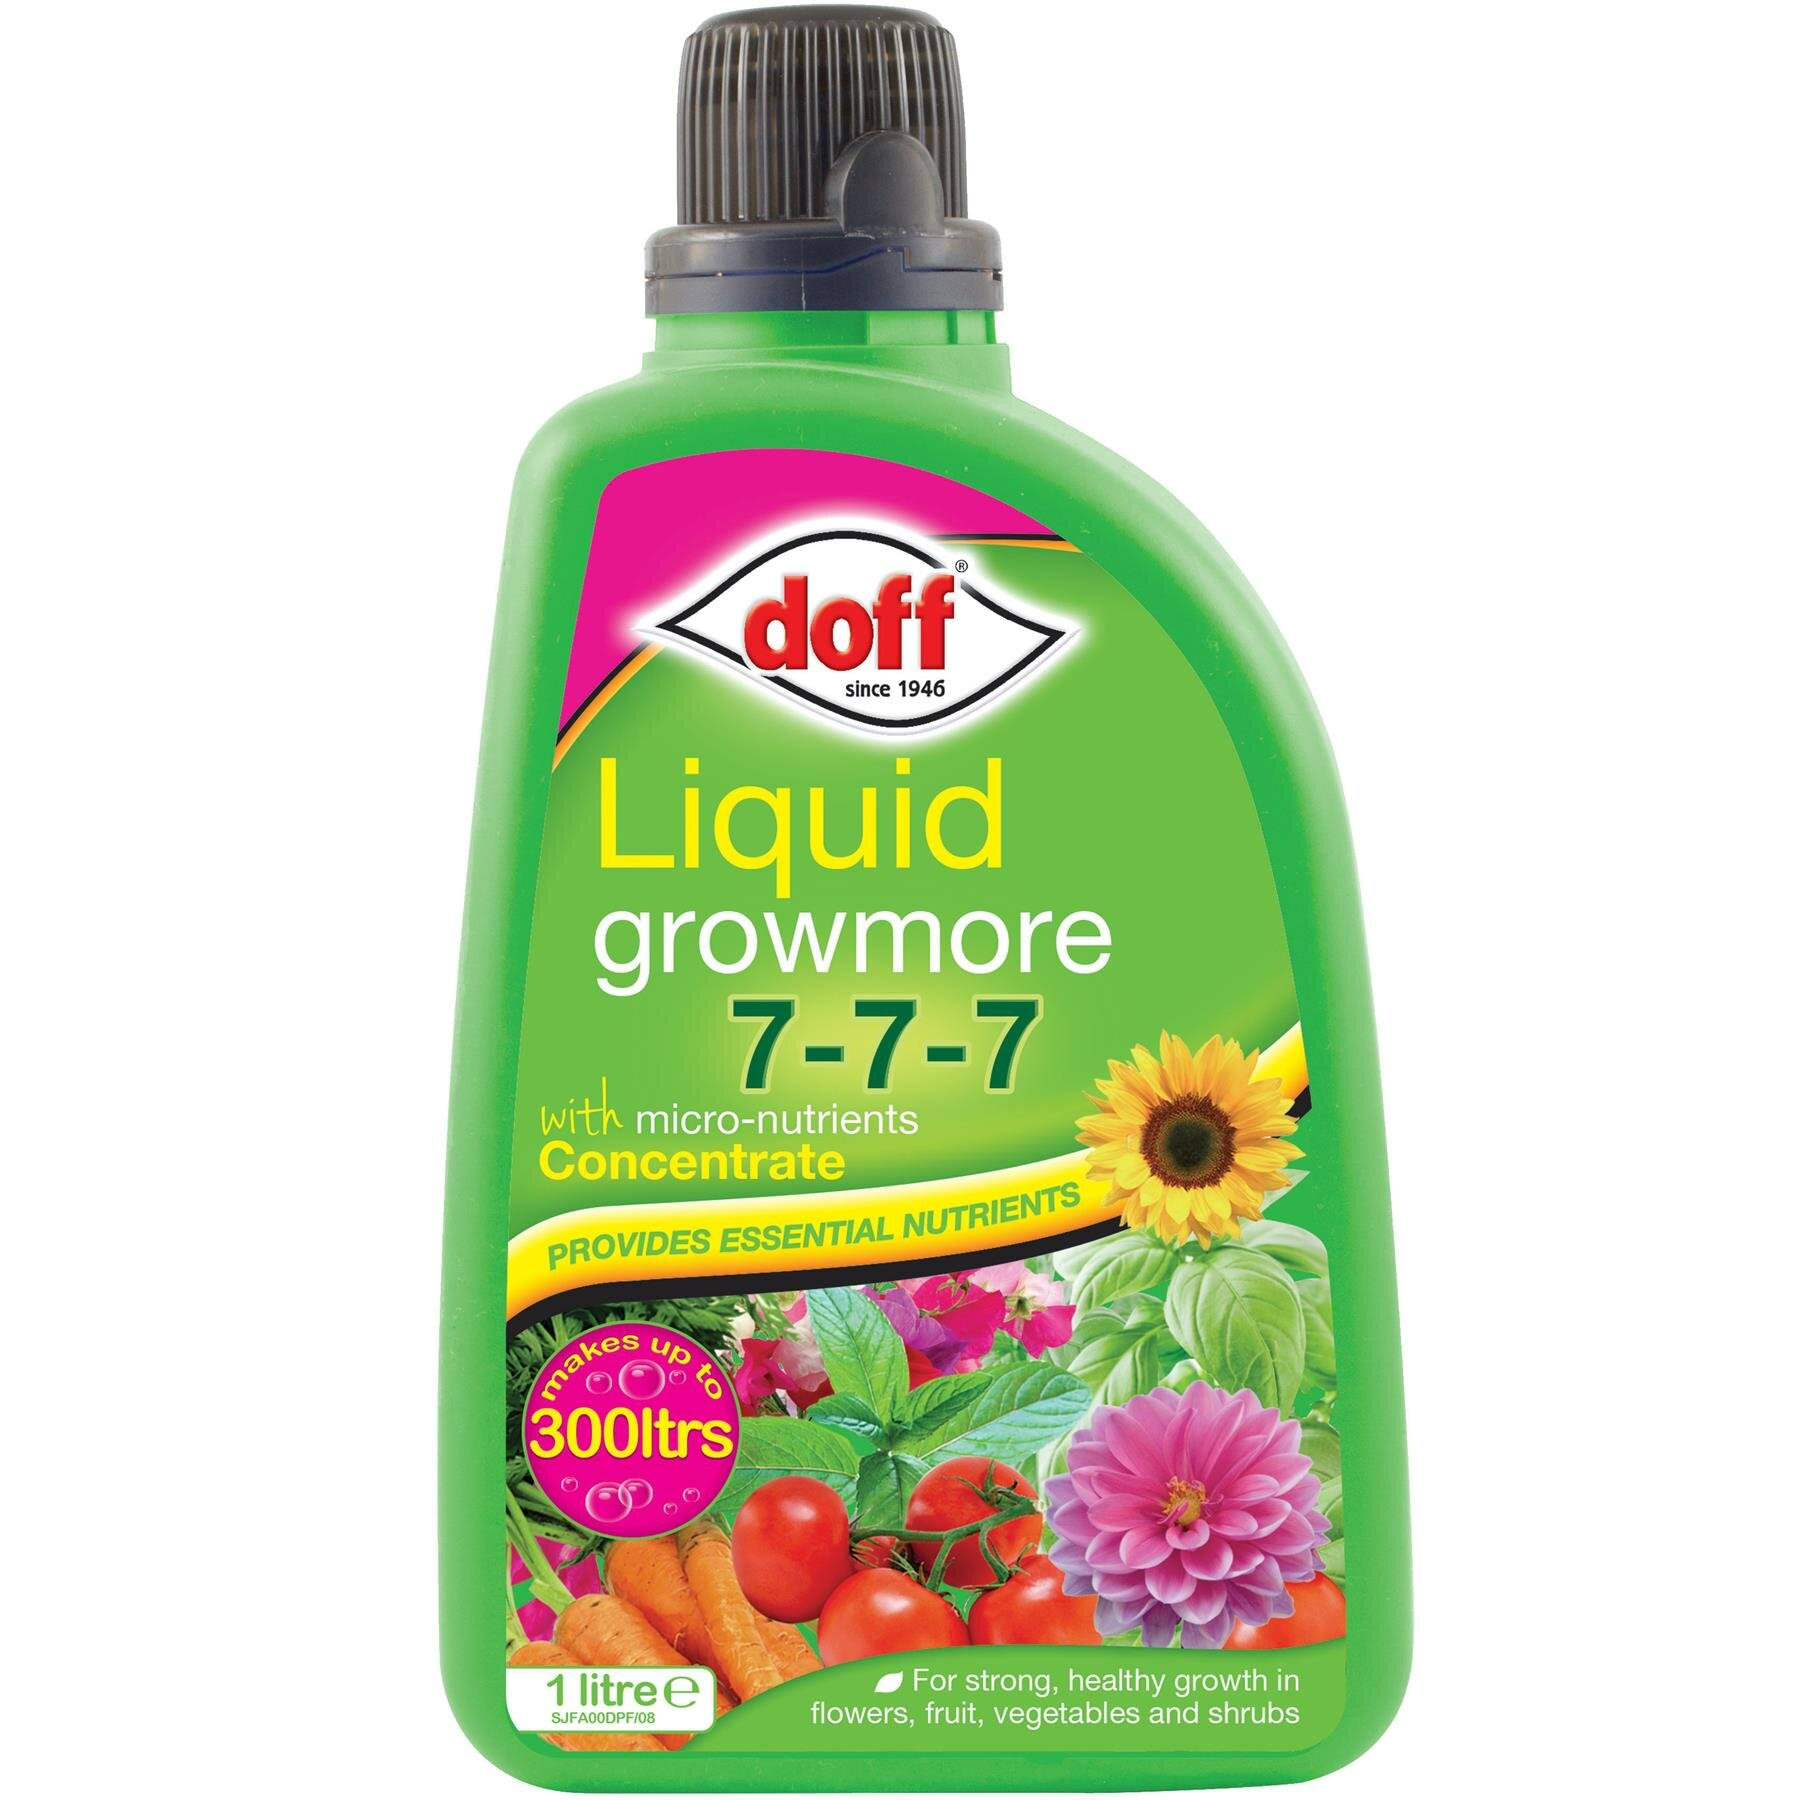 Doff Liquid Growmore